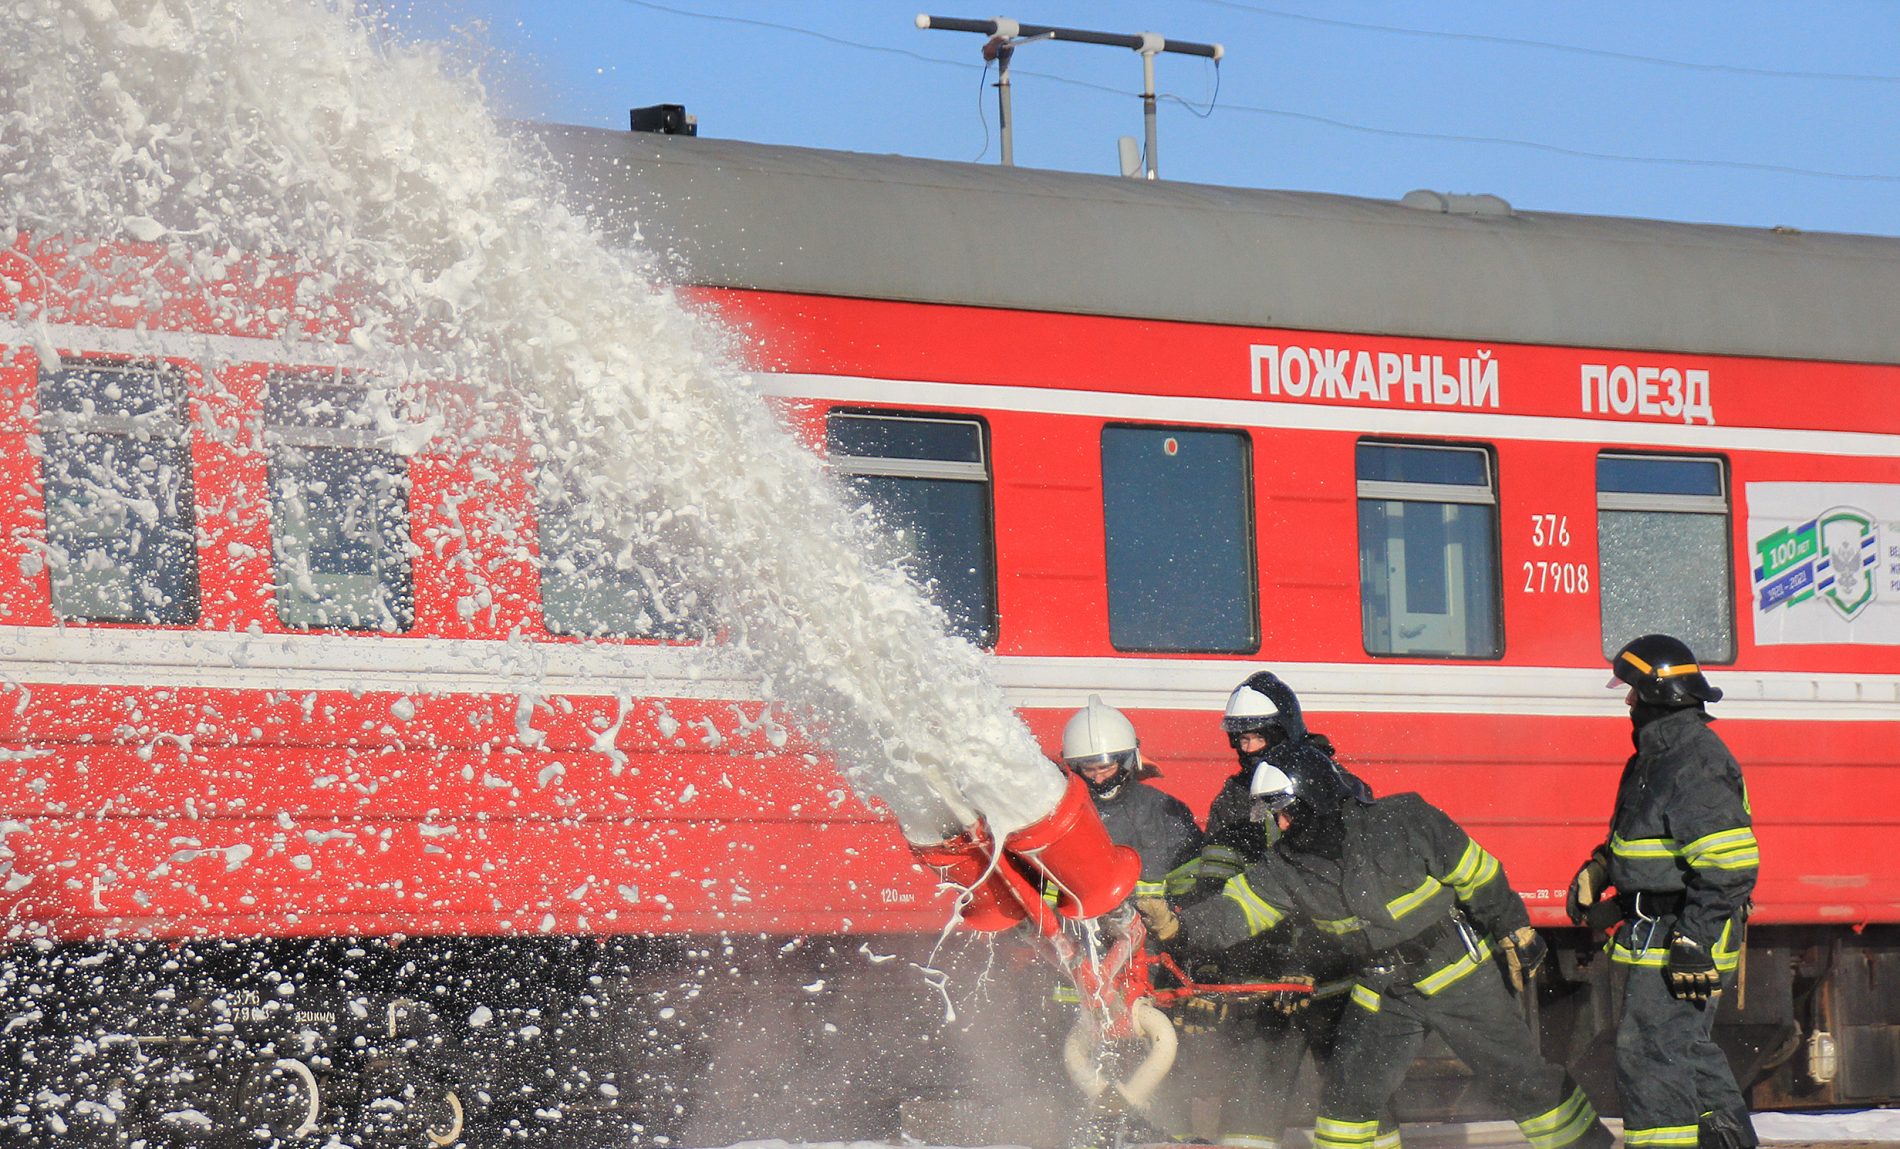 Пожарные поезда Северной железной дороги подготовлены к летнему пожароопасному периоду